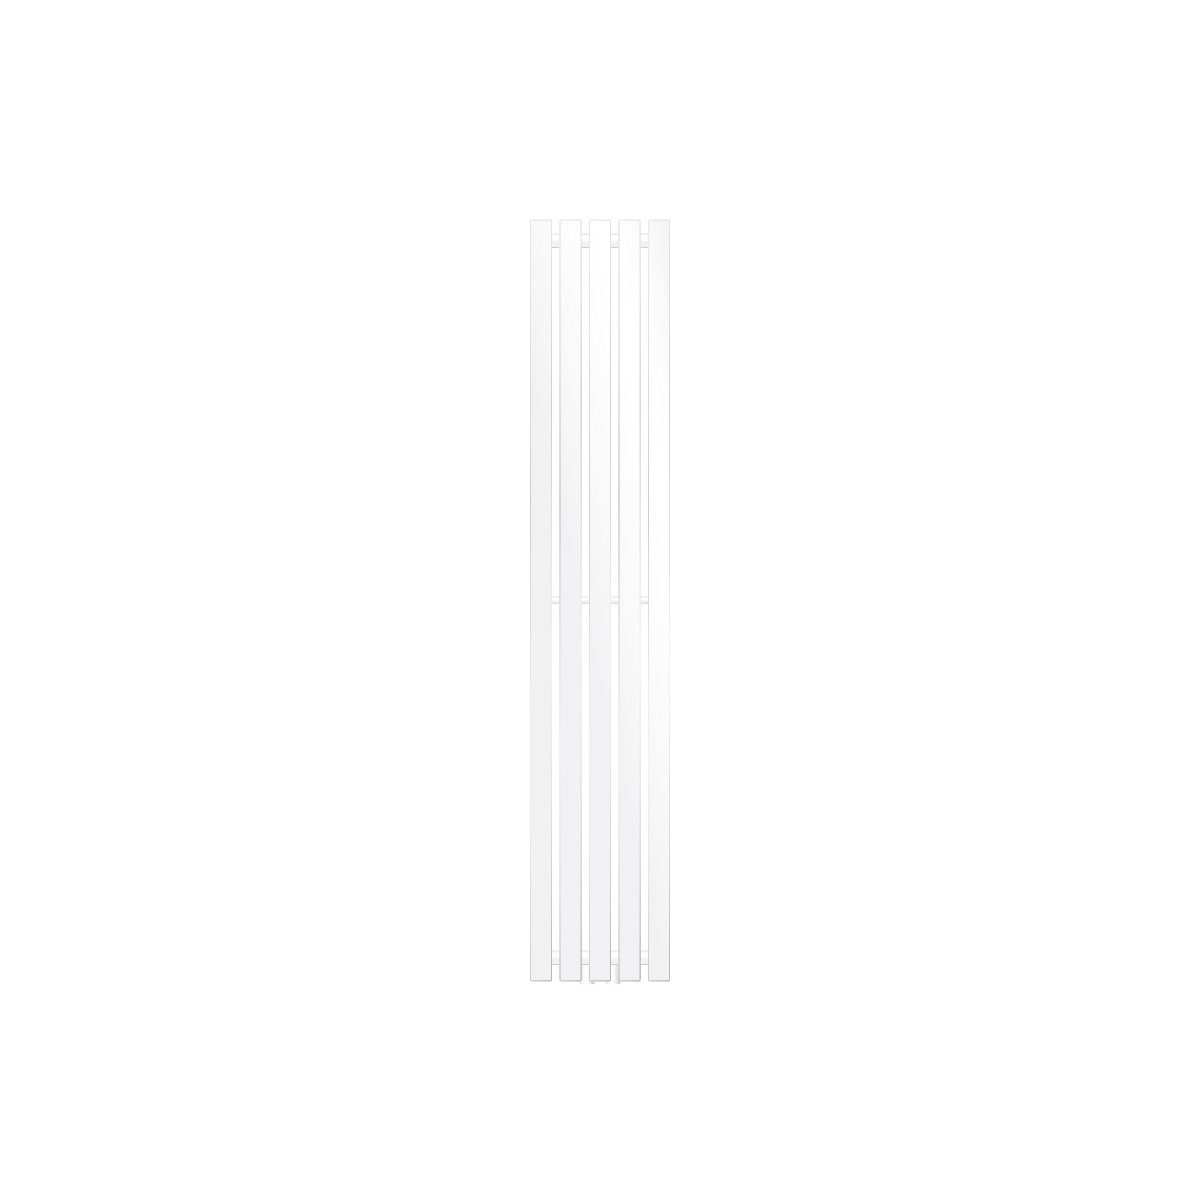 LuxeBath Heizkörper Paneelheizkörper Vertikal Flachheizkörper Designheizkörper Einreihig, Weiß 260x1400mm mit Mittelanschluss Flach Einlagig Badezimmer/Wohnraum